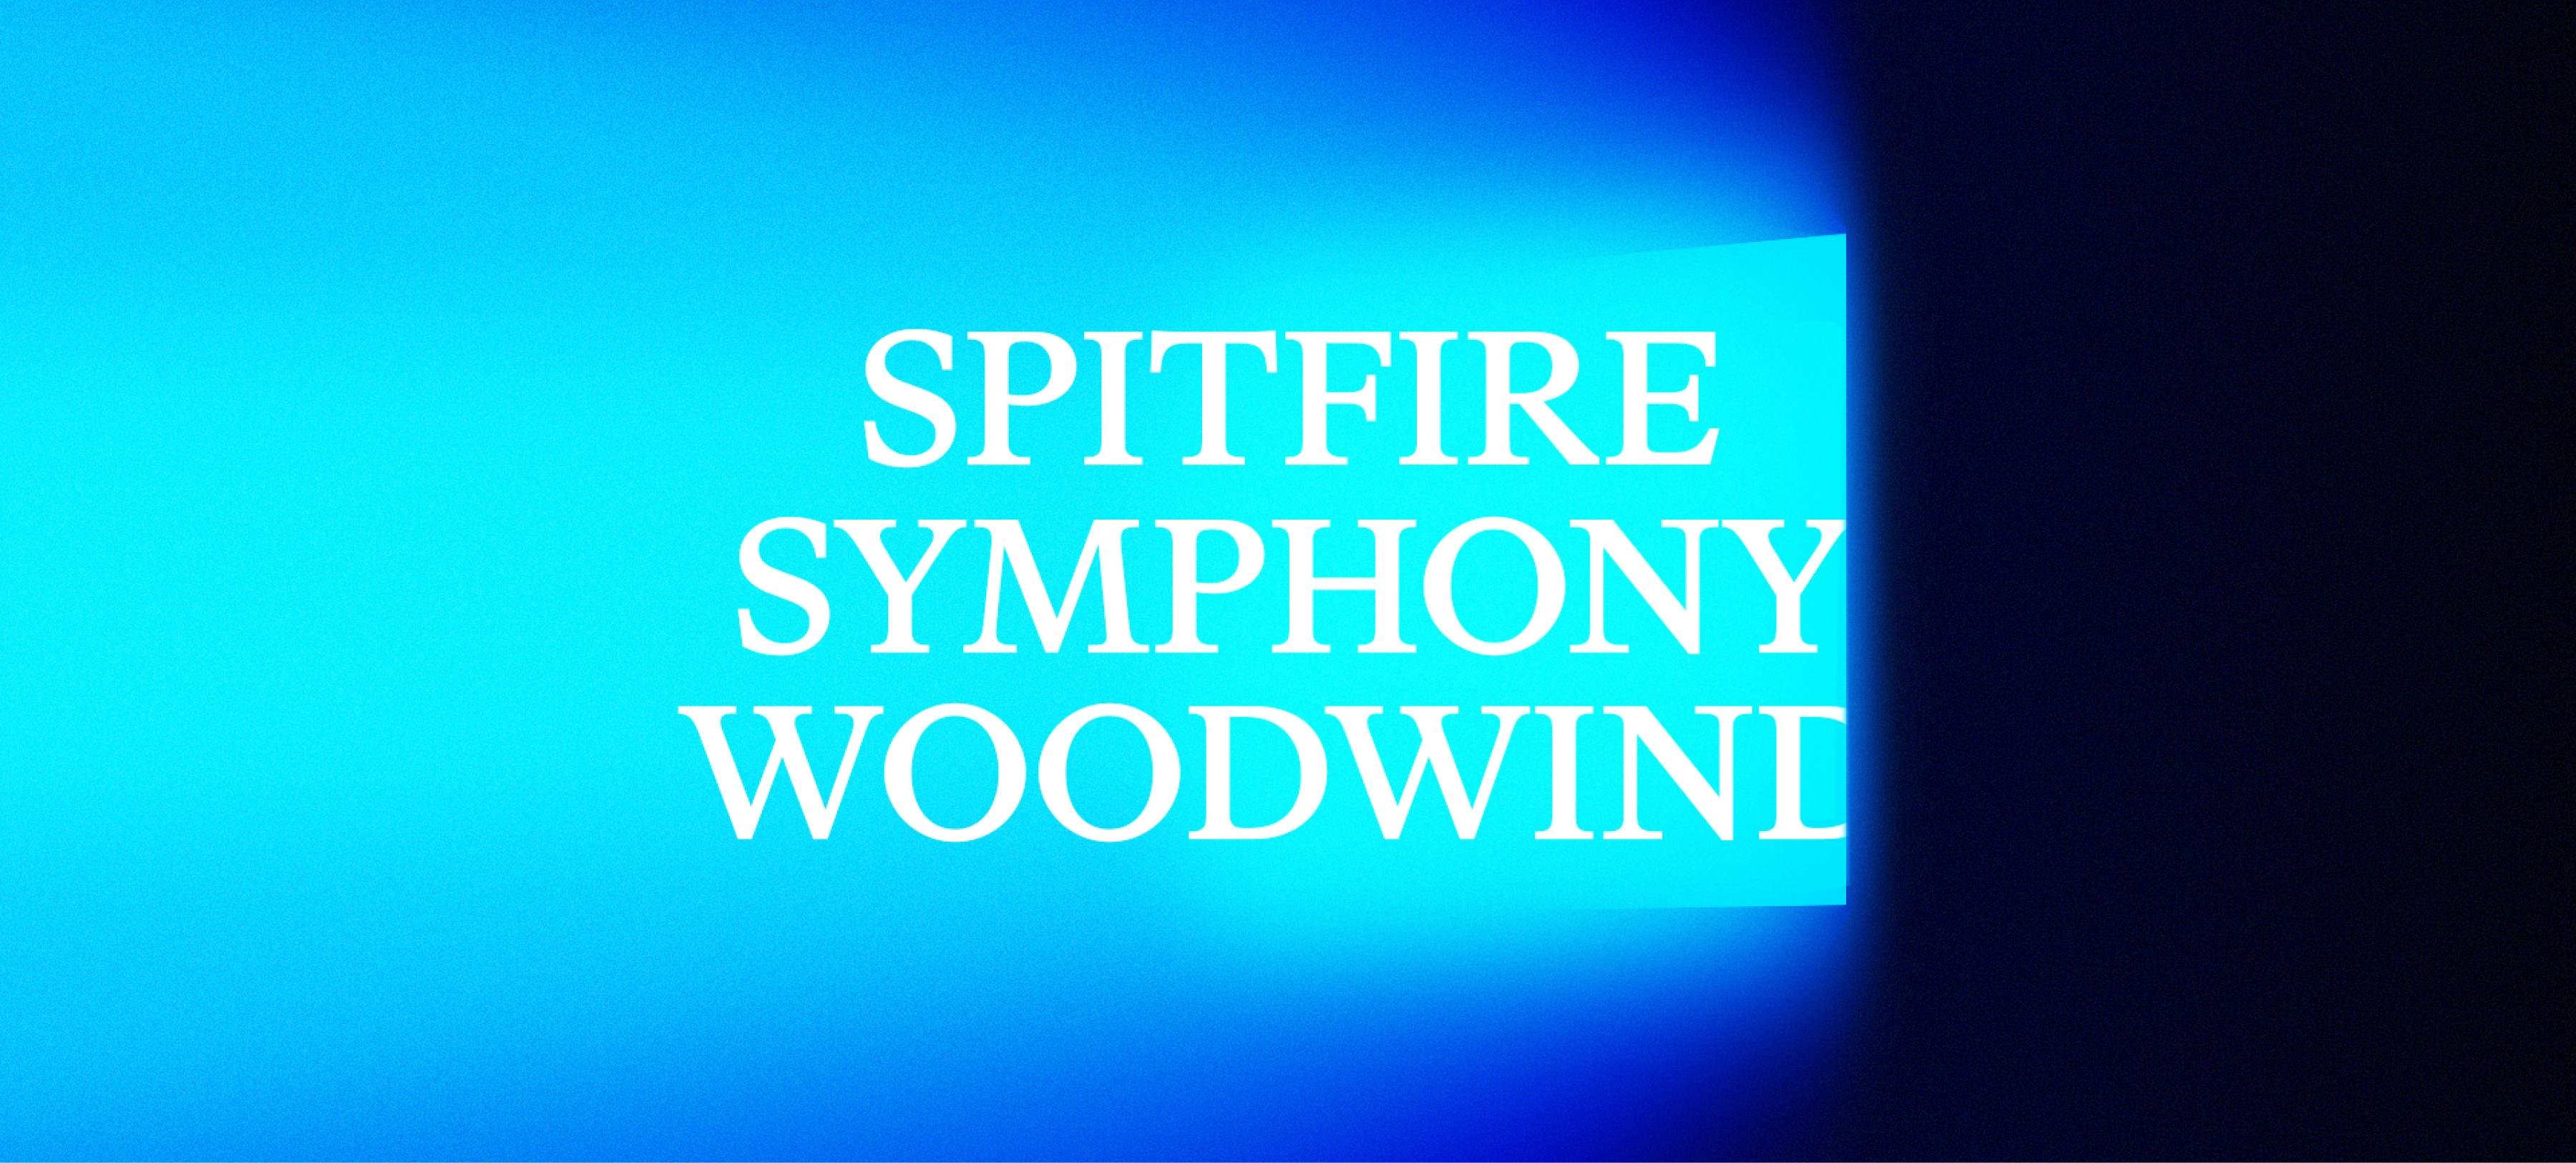 Spitfire Symphony Woodwind